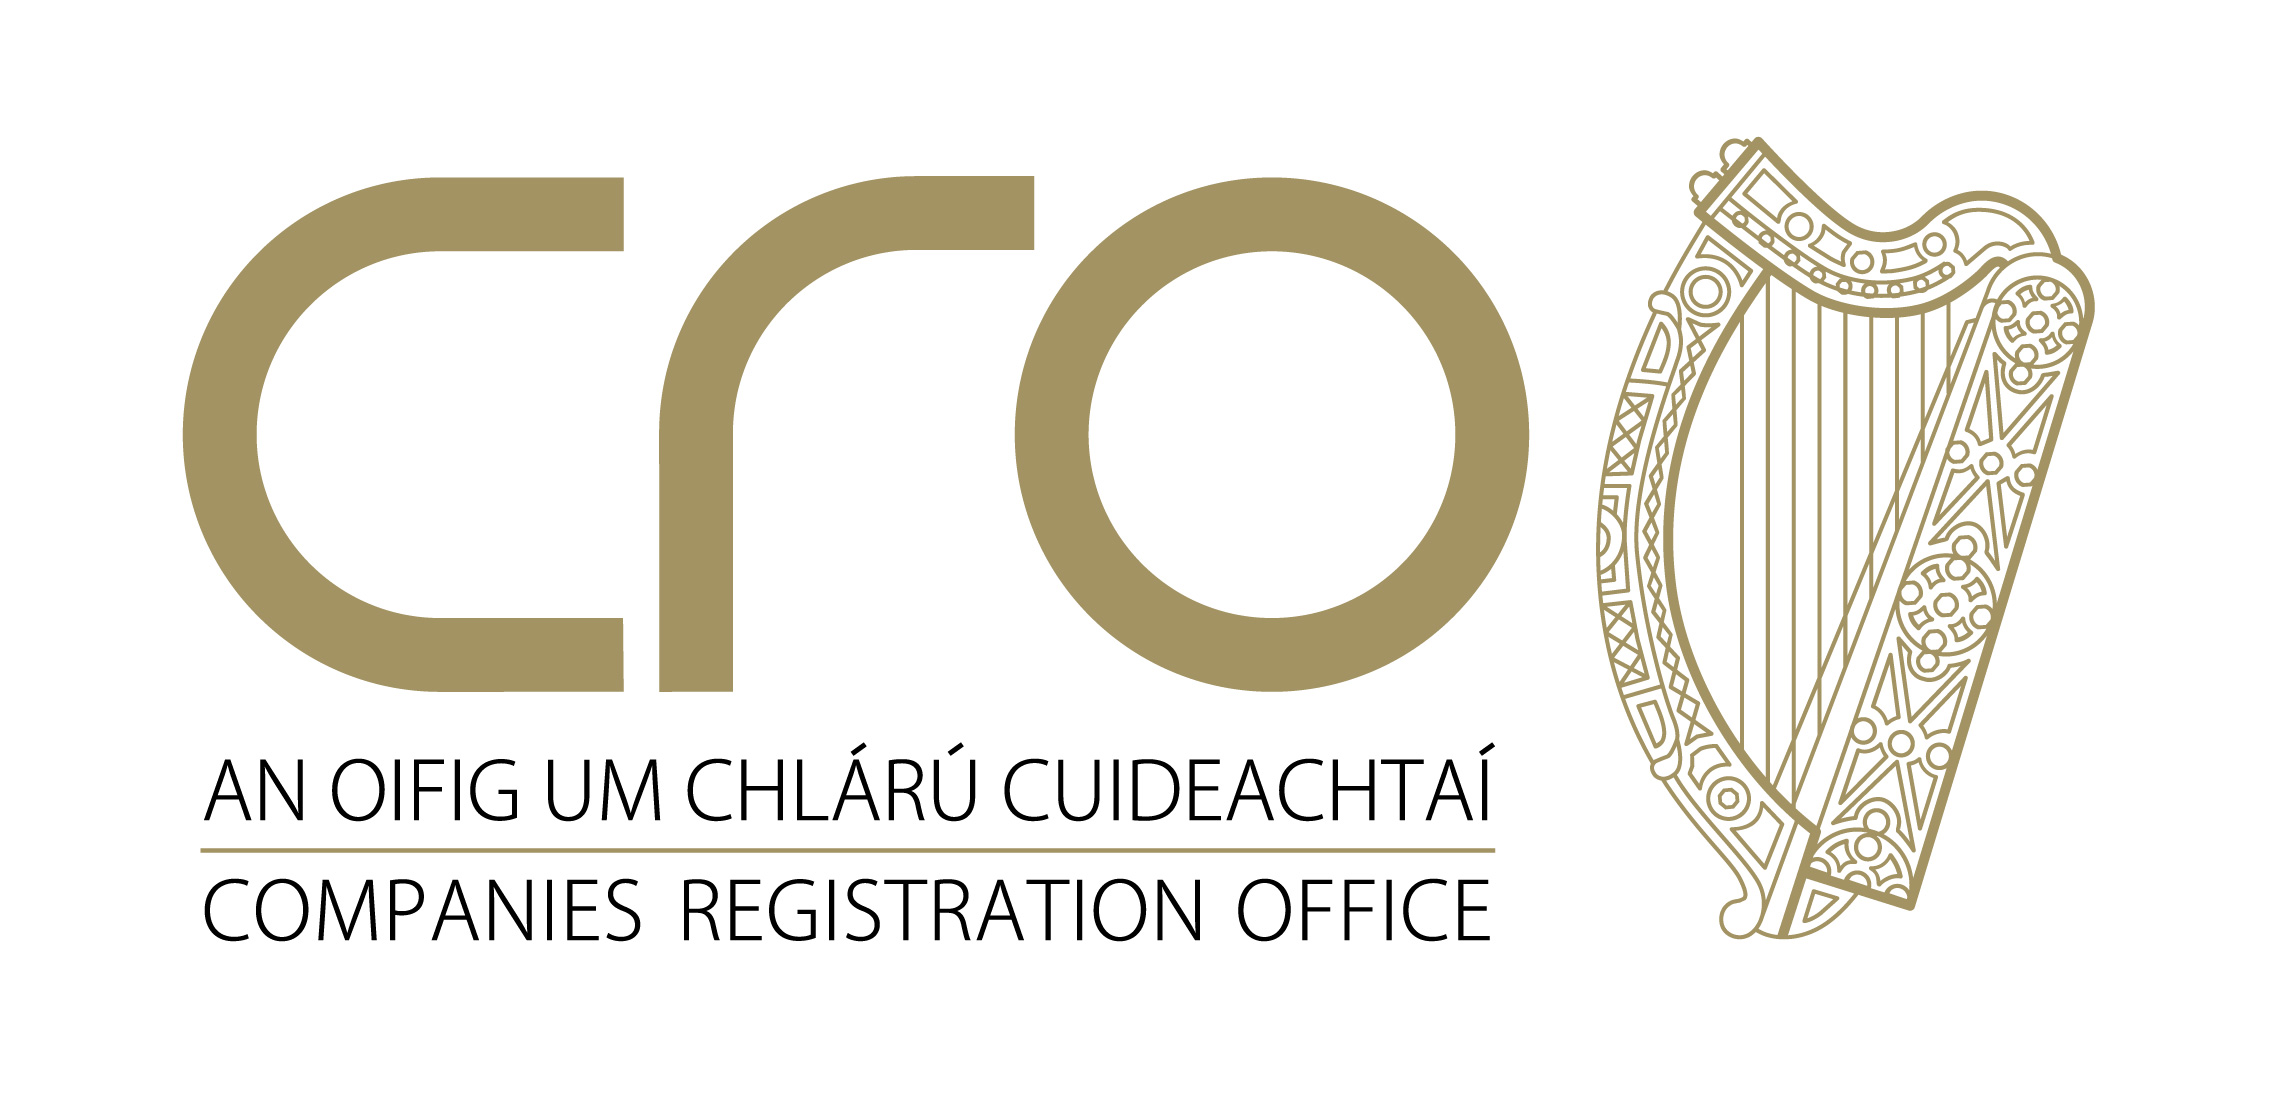 Reg office. Registrars Office. Company Registration. The reg Company. Registrars Office logo.